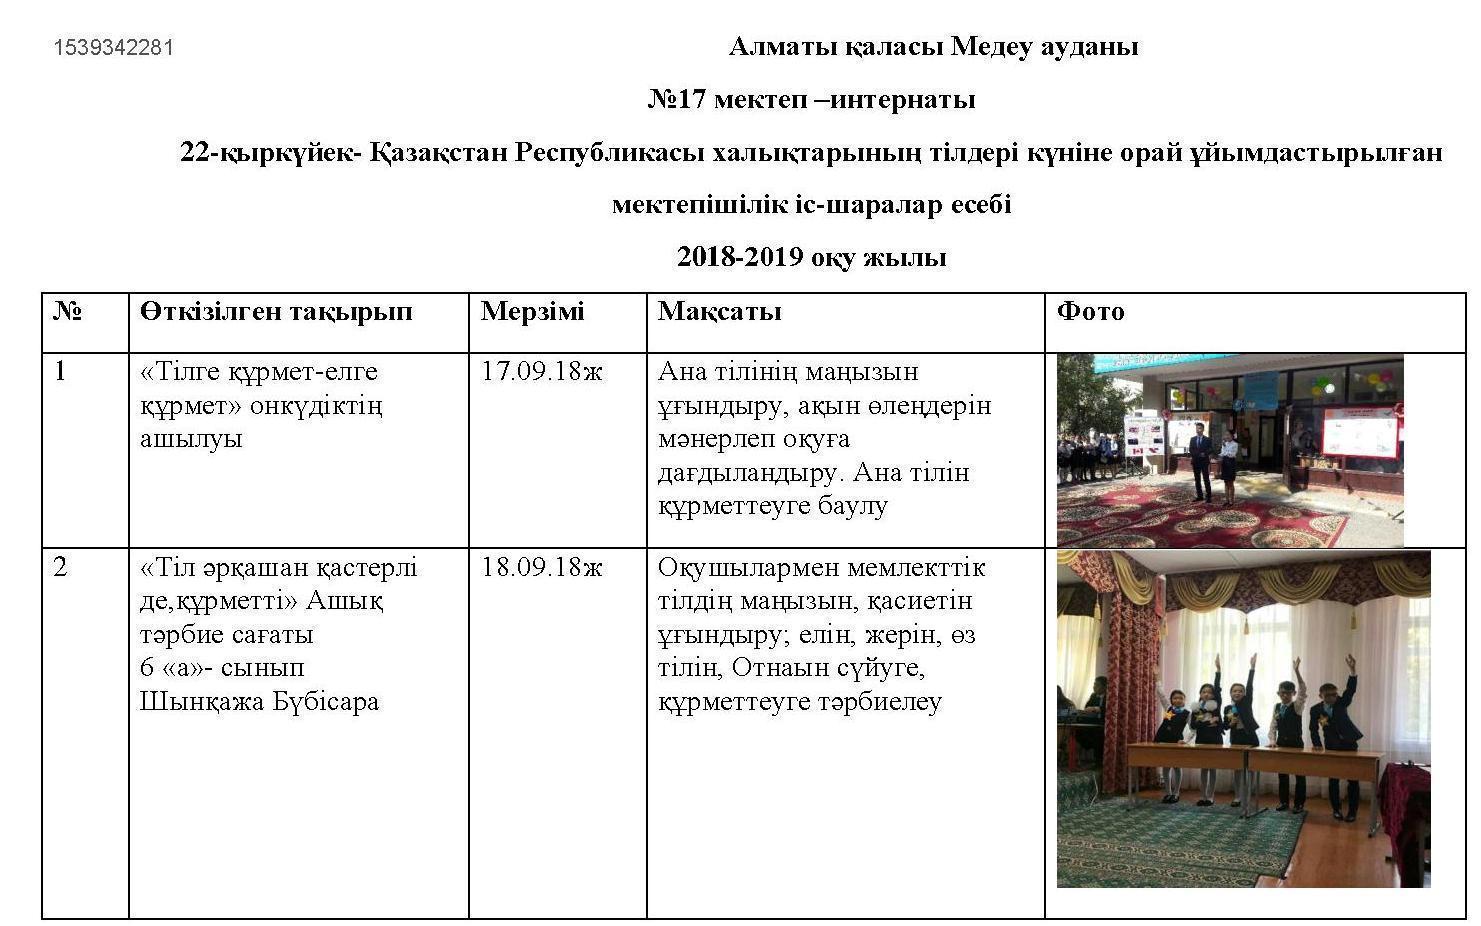 22-сентябрь- Қазақстан Республикасы халықтарының тілдері күніне орай ұйымдастырылған мектепішілік іс-шаралар есебі